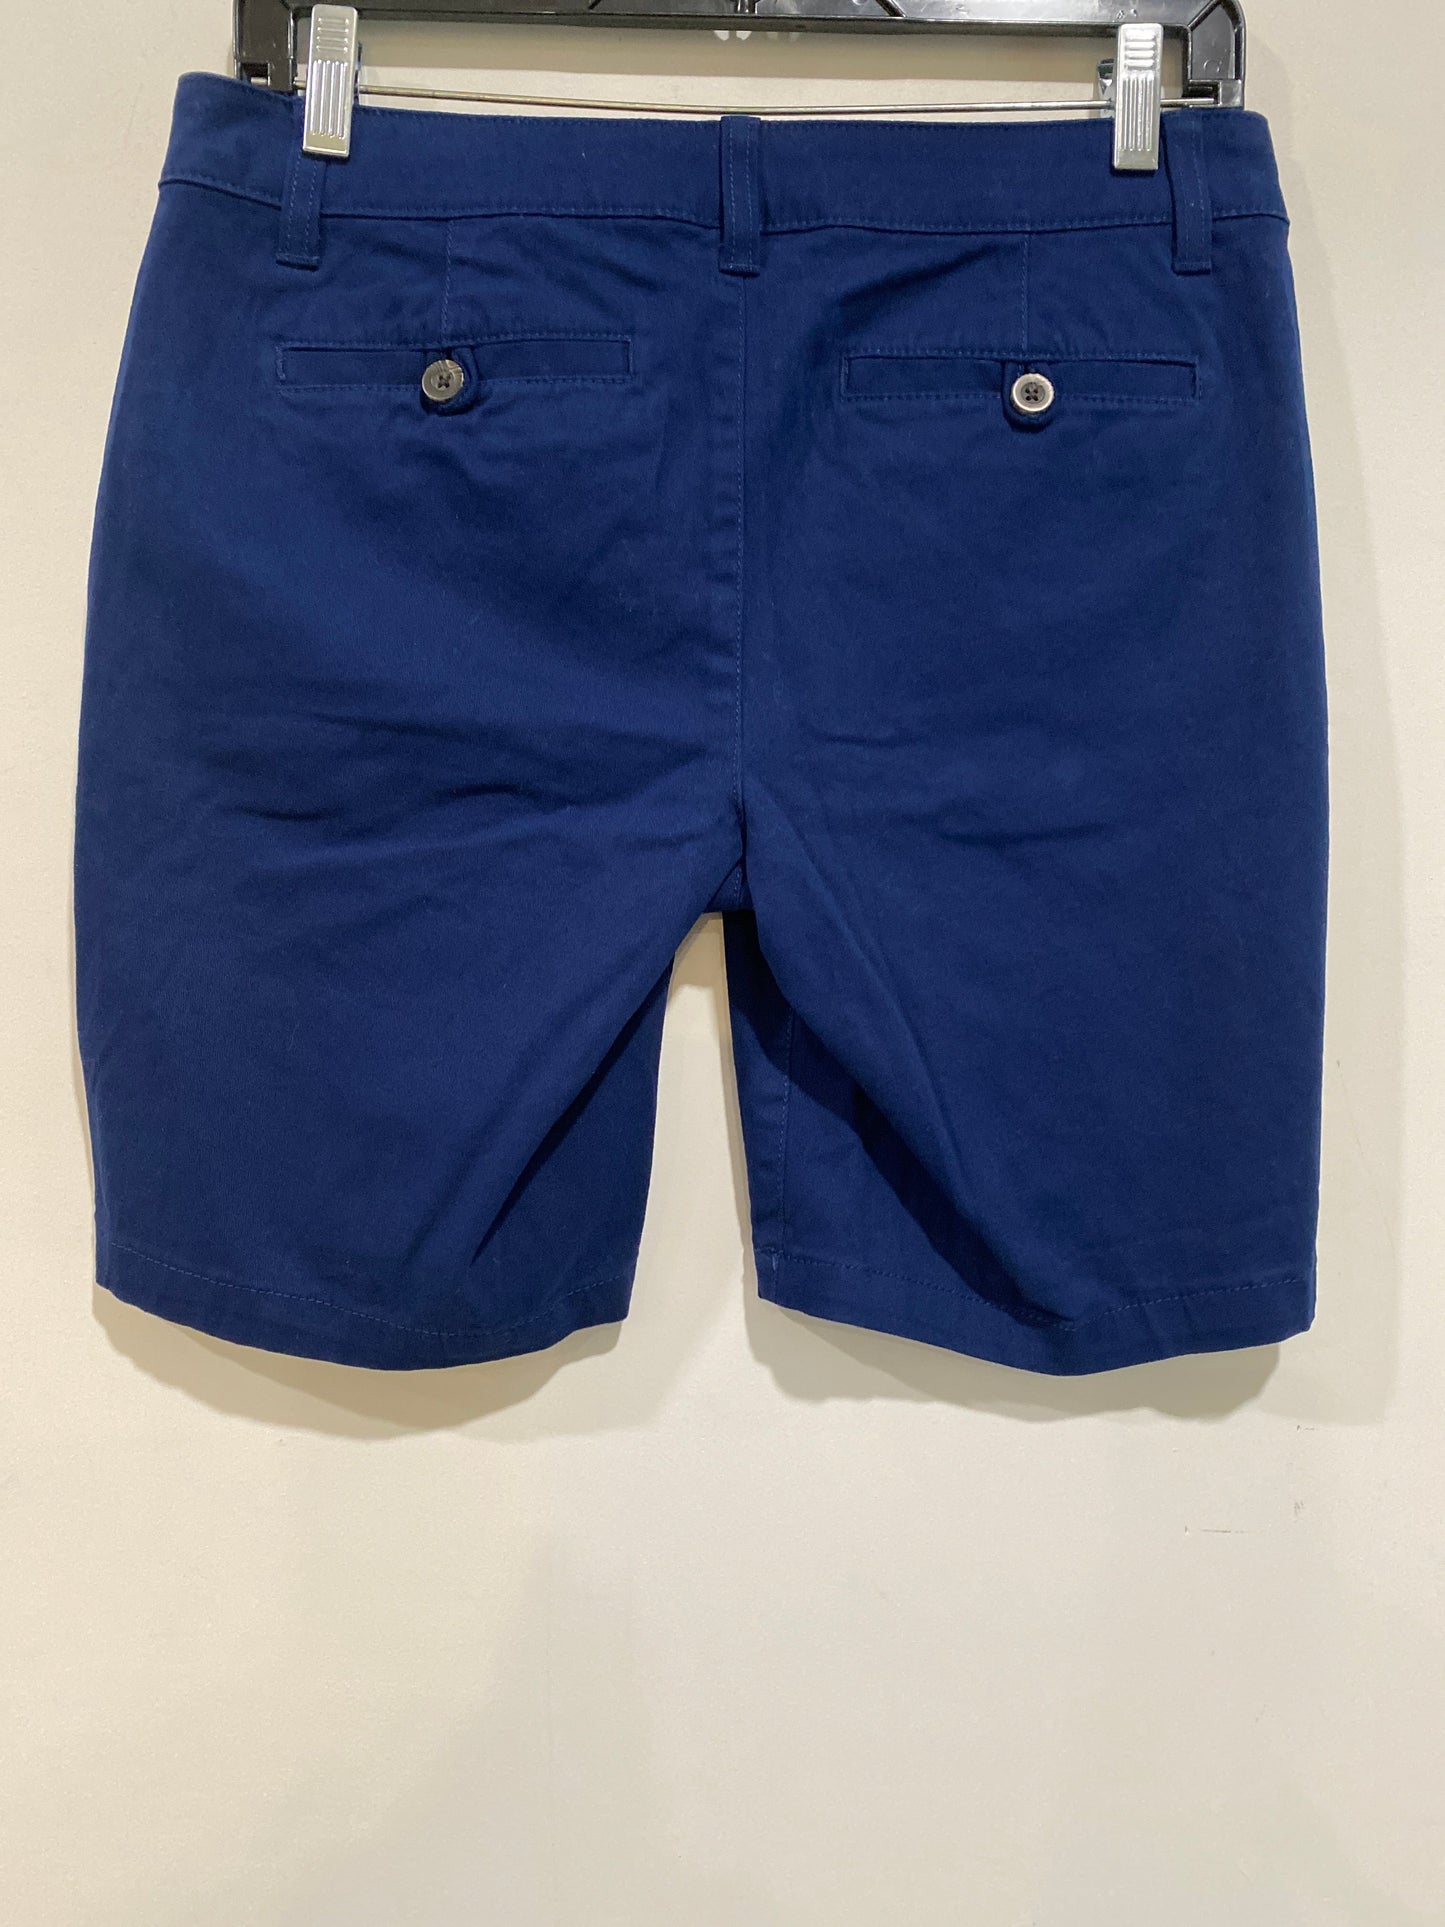 Blue Shorts Ana, Size 4